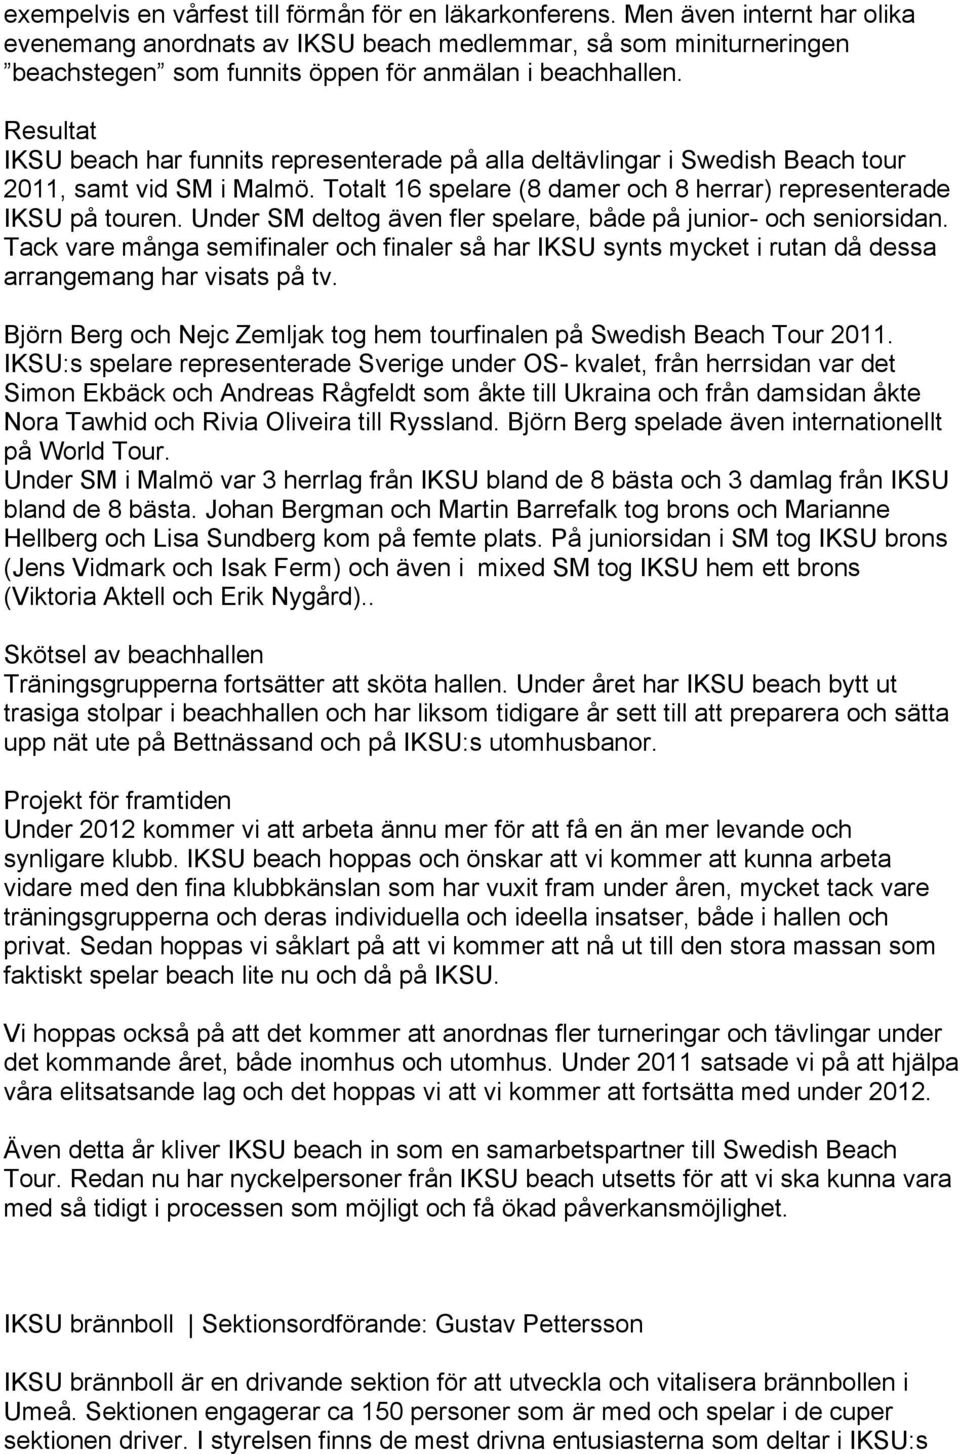 Resultat IKSU beach har funnits representerade på alla deltävlingar i Swedish Beach tour 2011, samt vid SM i Malmö. Totalt 16 spelare (8 damer och 8 herrar) representerade IKSU på touren.